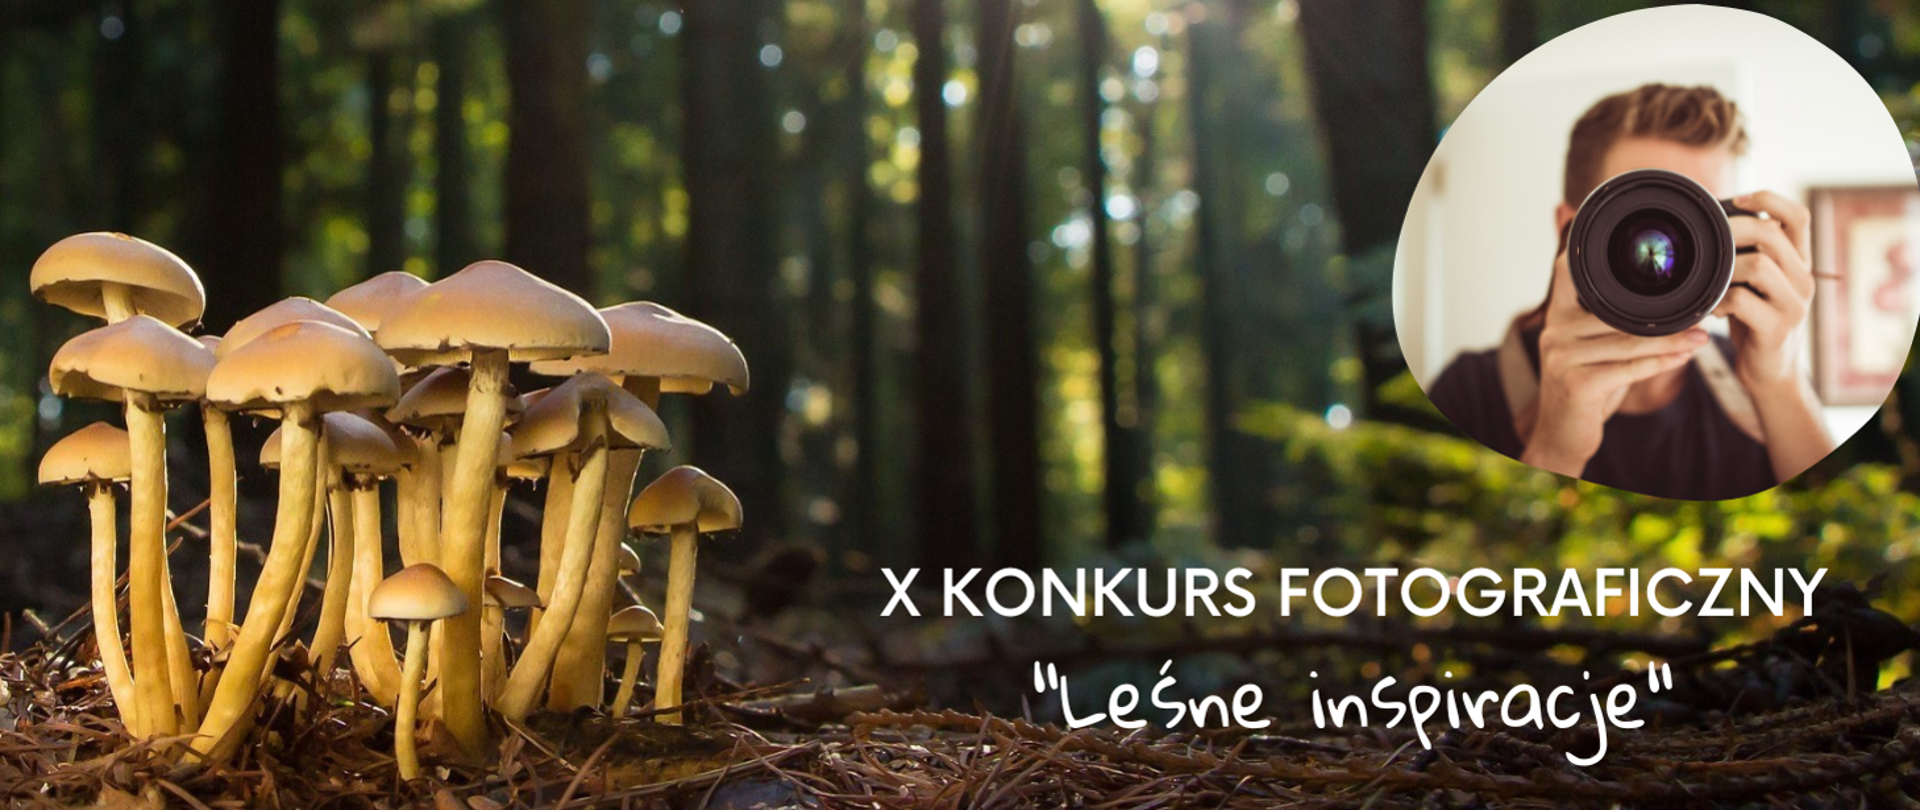 X konkurs fotografinczy leśne inspiracje